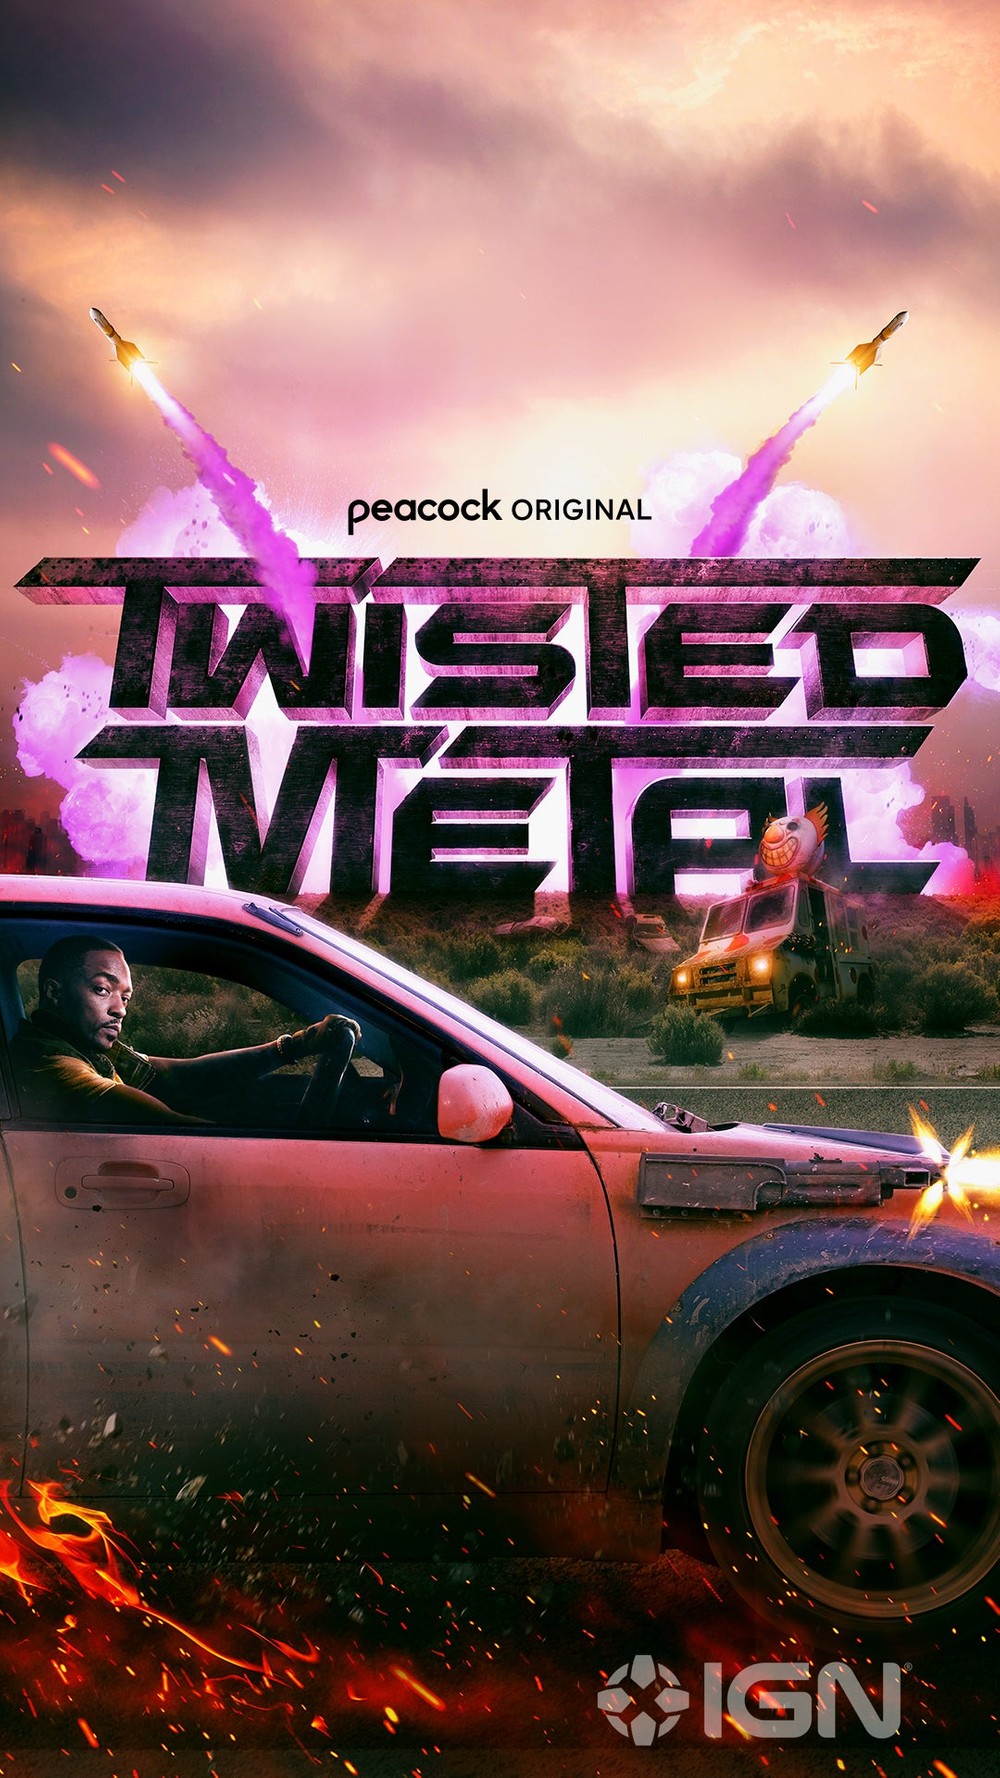 Twisted Metal, clássico jogo da Sony, será adaptado para série live action